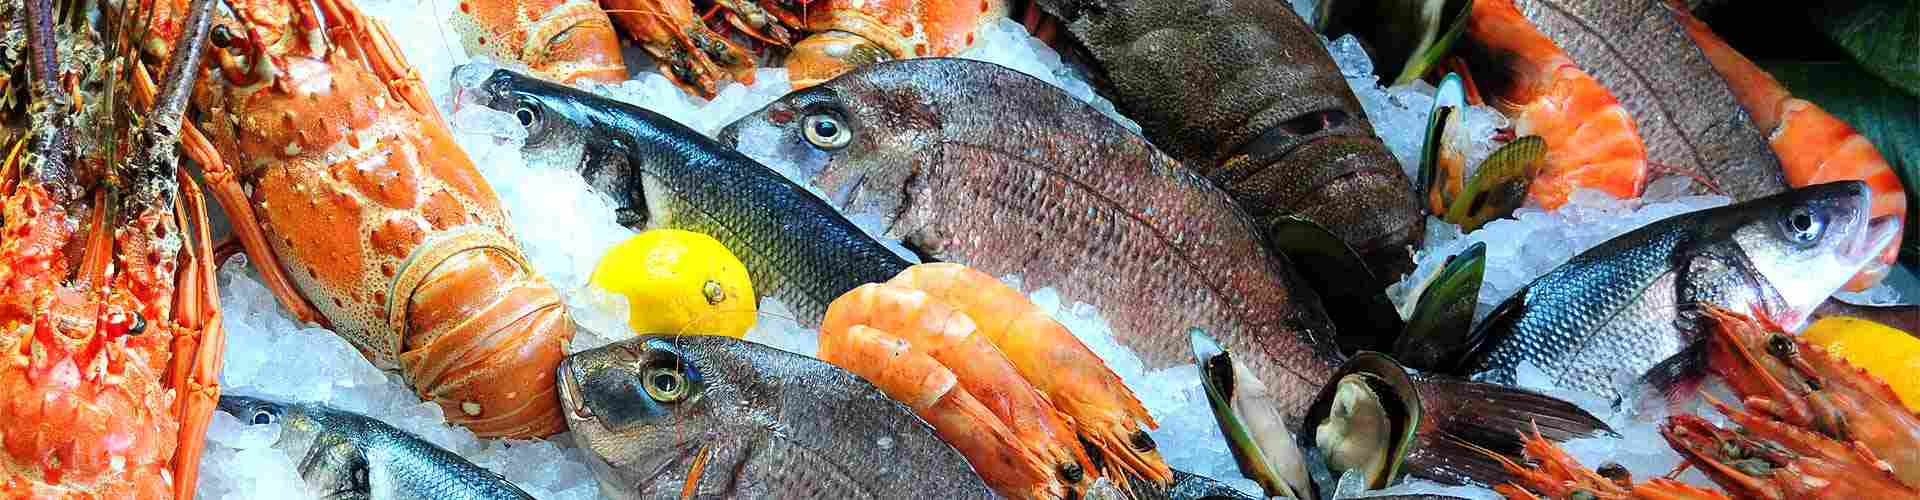 ¿Dónde comer pescado en Cala?